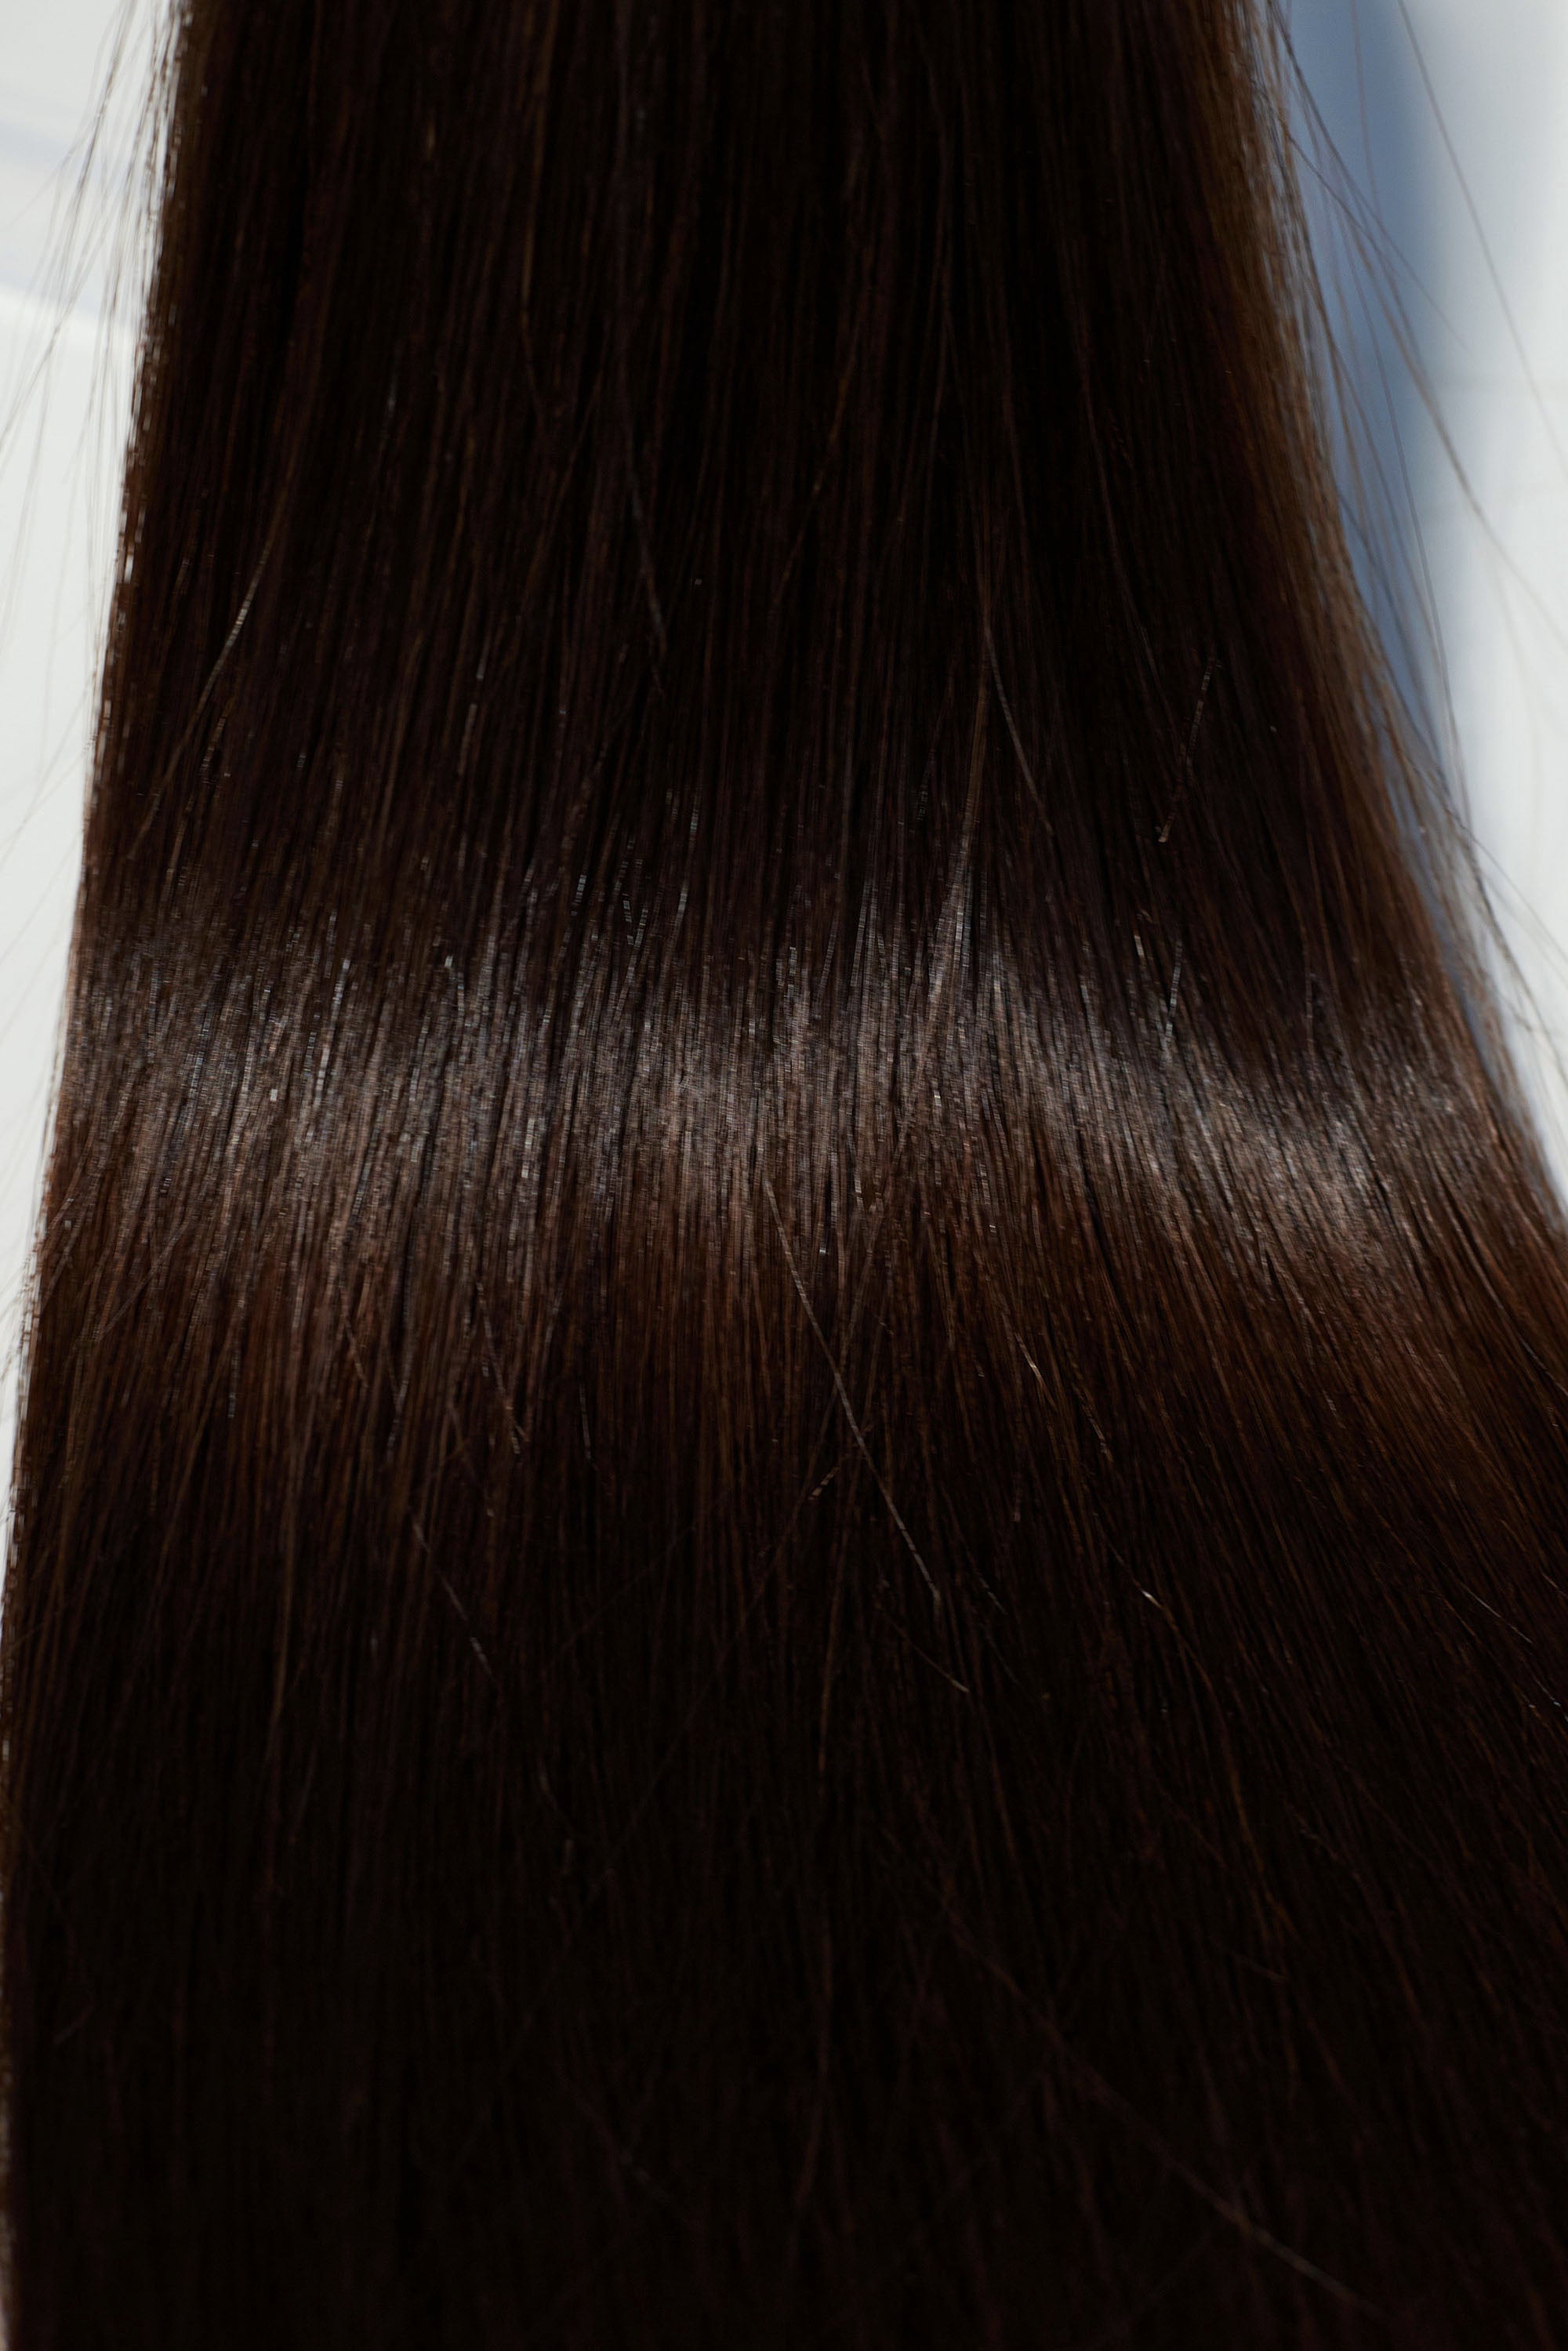 Behair professional Keratin Tip "Premium" 28" (70cm) Natural Straight Dark Coffee Brown #2 - 25g (Micro - 0.5g each pcs) hair extensions